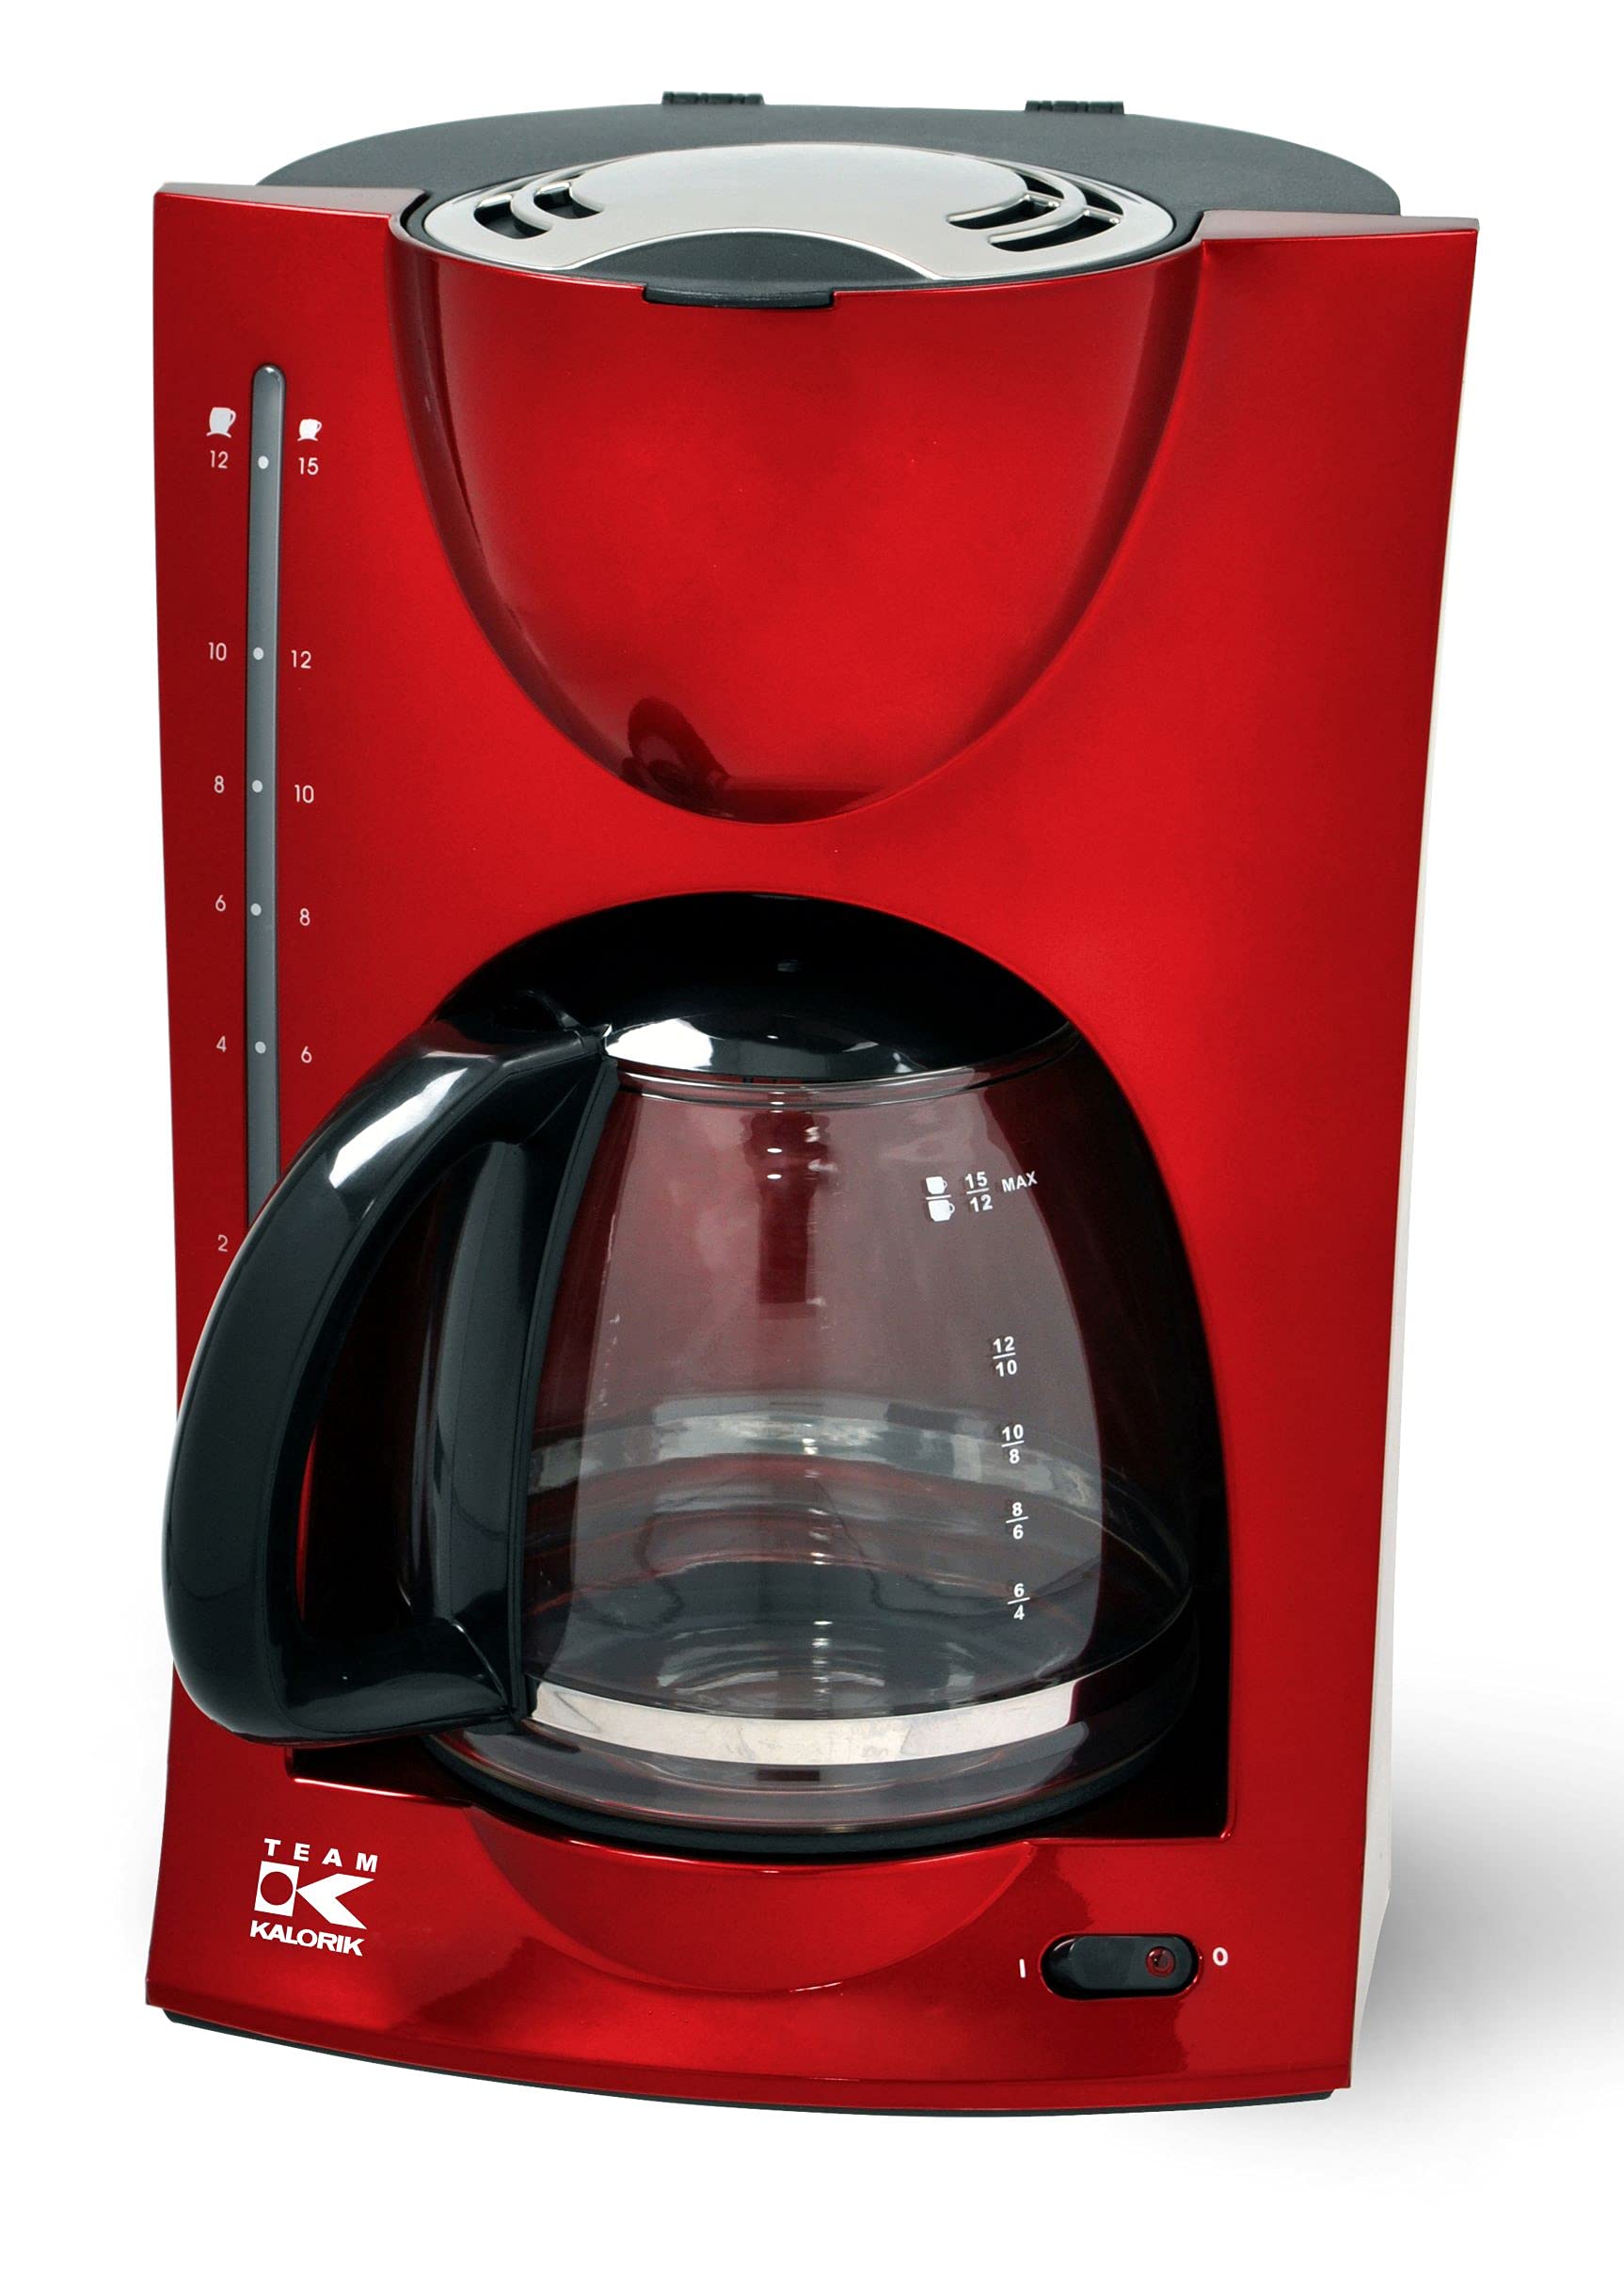 Kalorik Filter-Kaffeemaschine, 1,5 l Fassungsvermögen, Glaskanne, Für bis zu 12 Tassen, 900 W, Rot, TKG KA 1050 R, Metallic-rot*11427